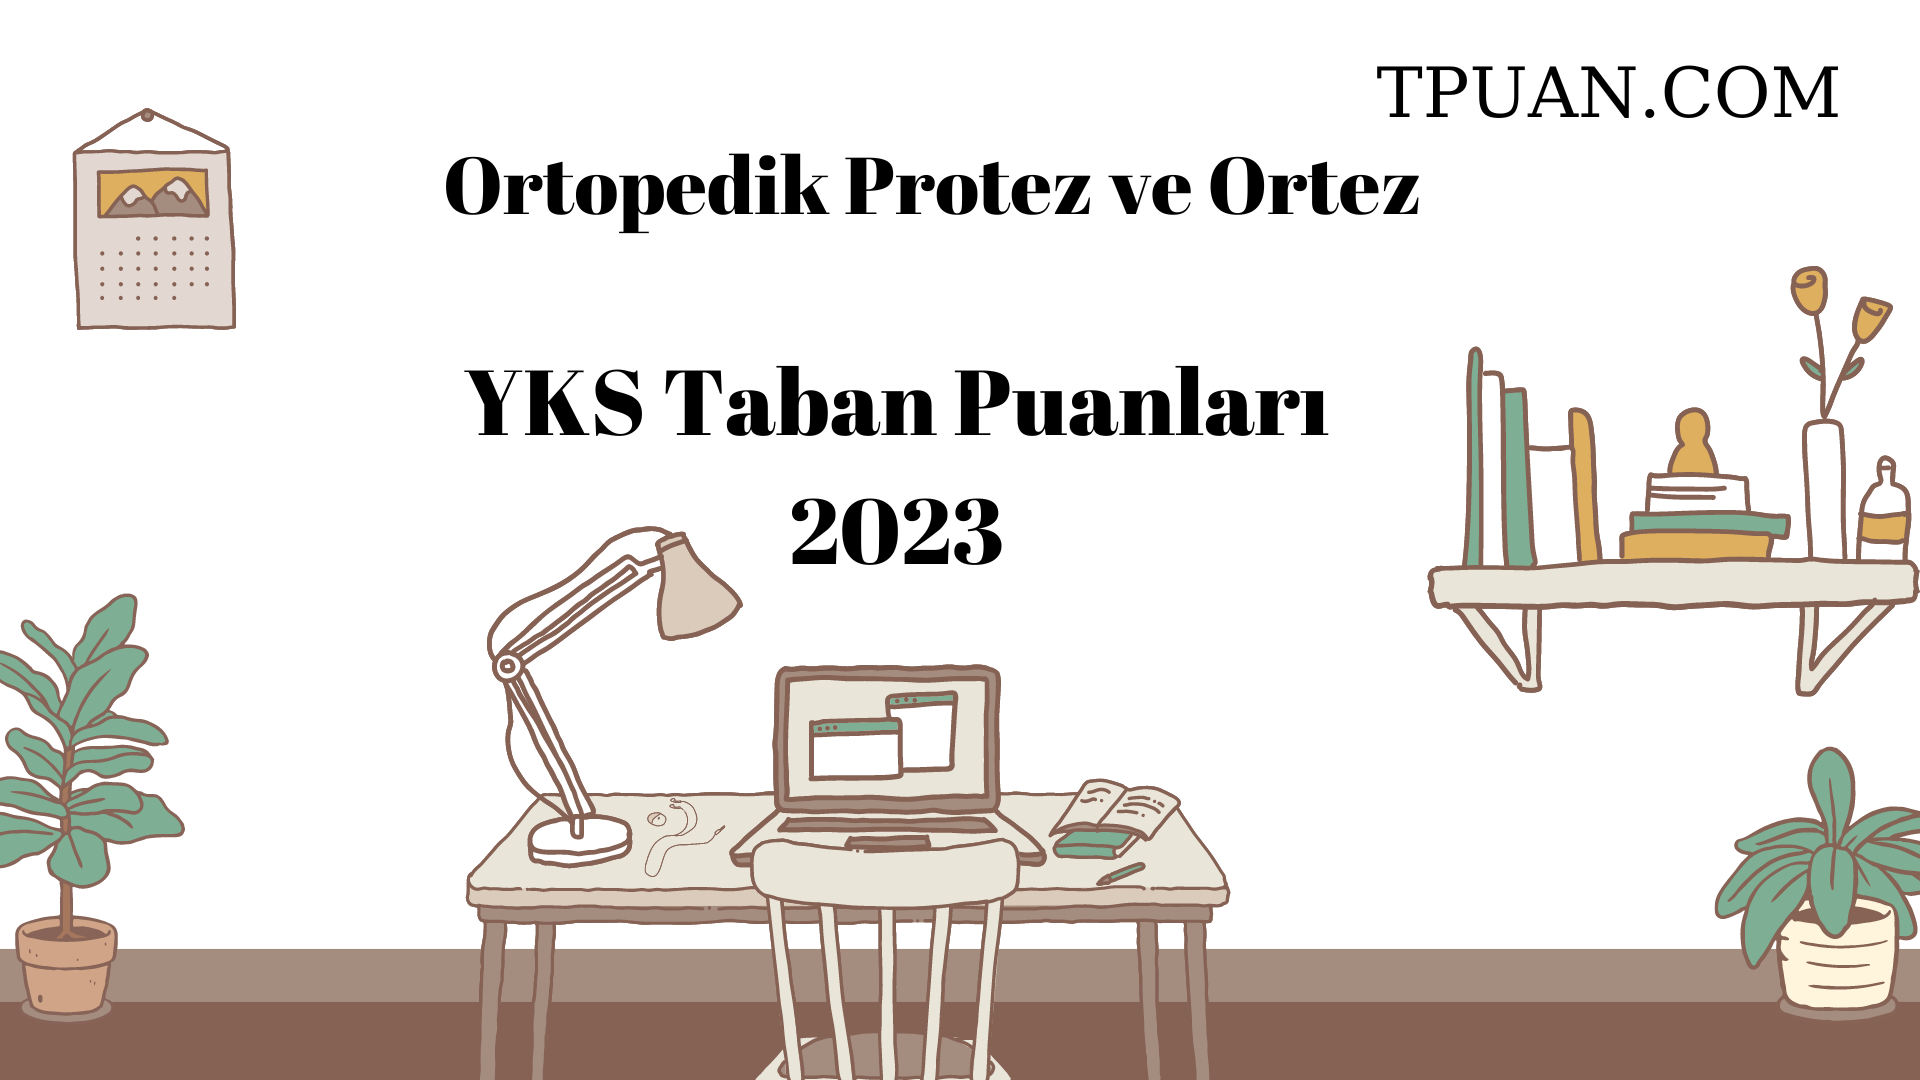  Ortopedik Protez ve Ortez YKS Taban Puanları 2023